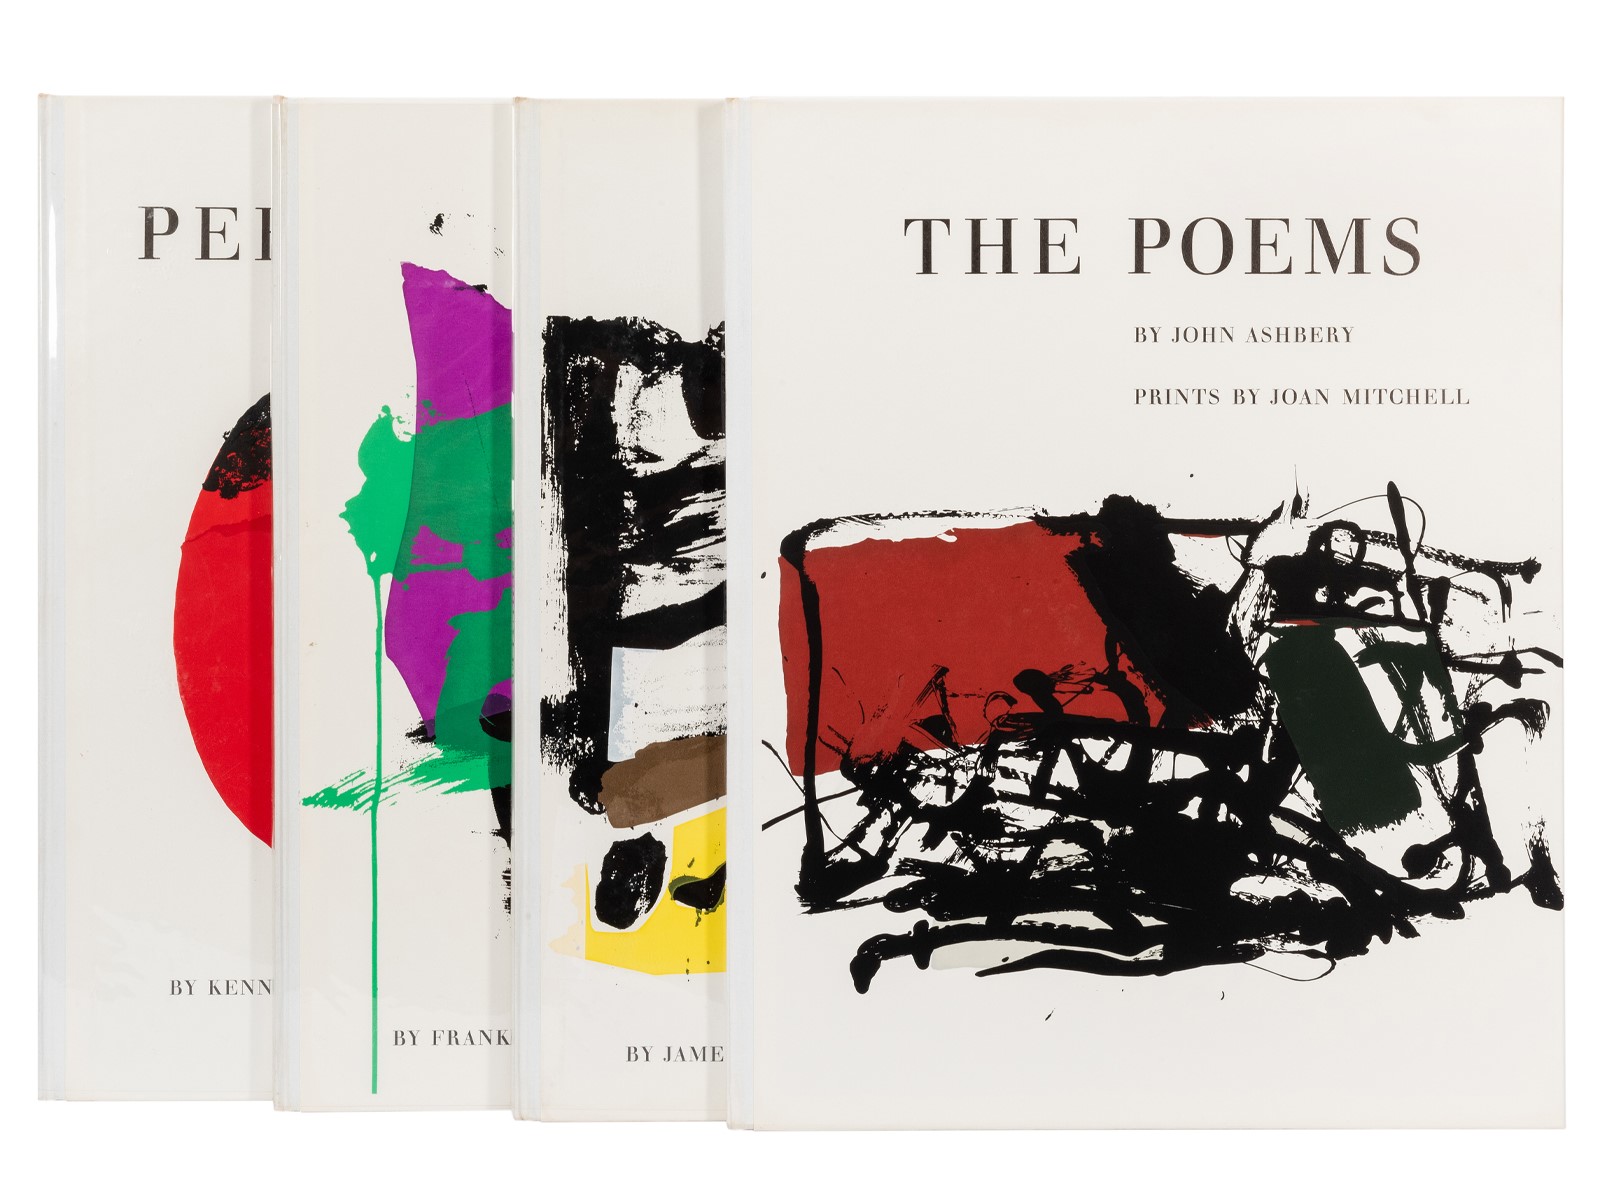 John Ashbery's The Poems